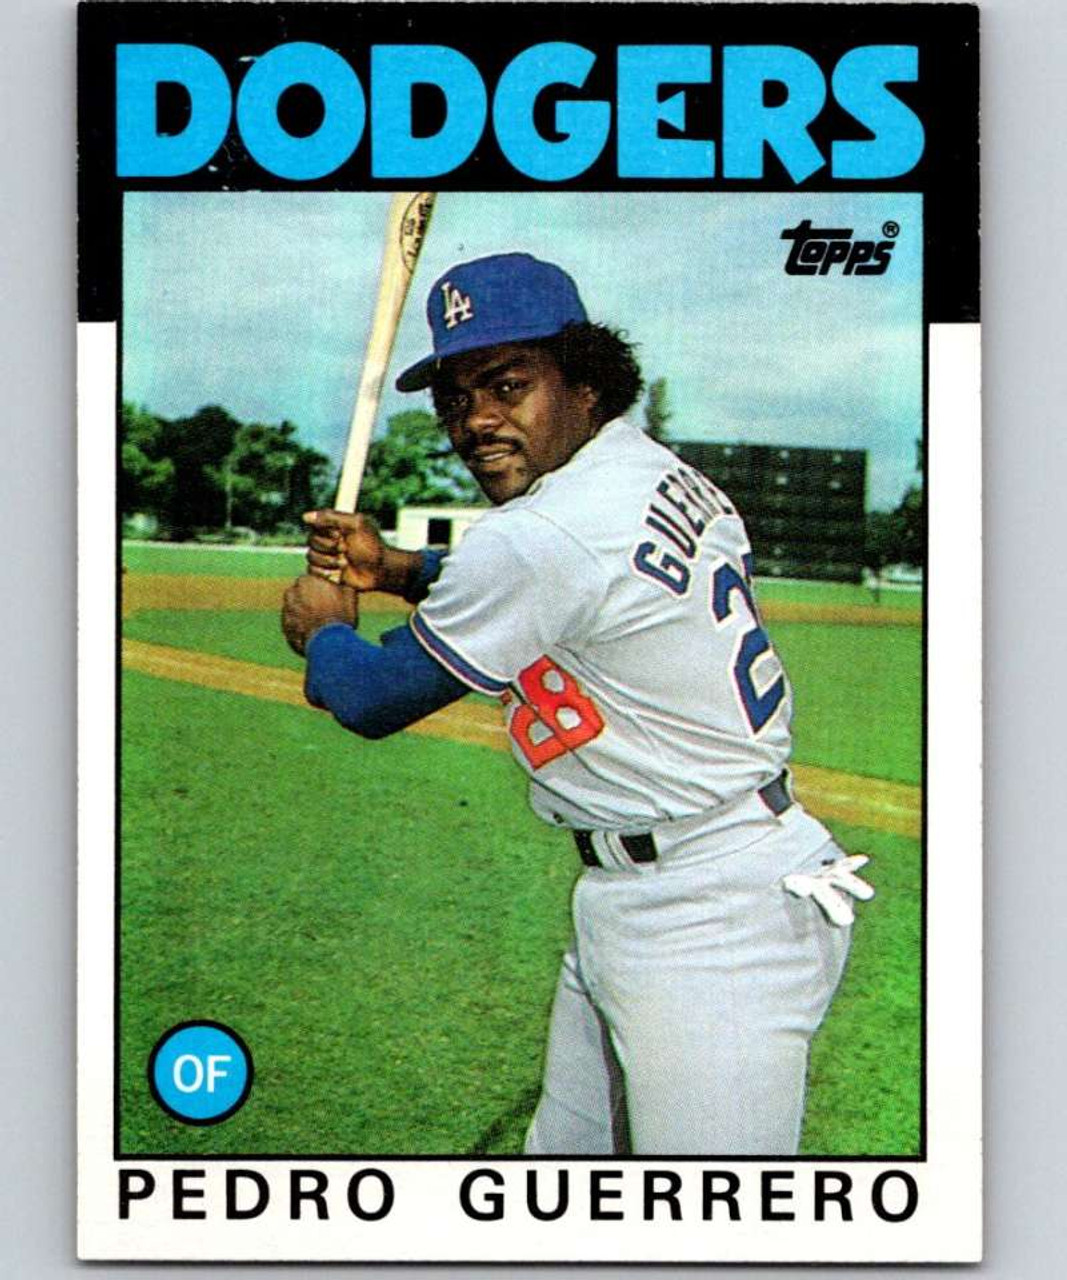  1981 Topps Baseball Card #651 Pedro Guerrero